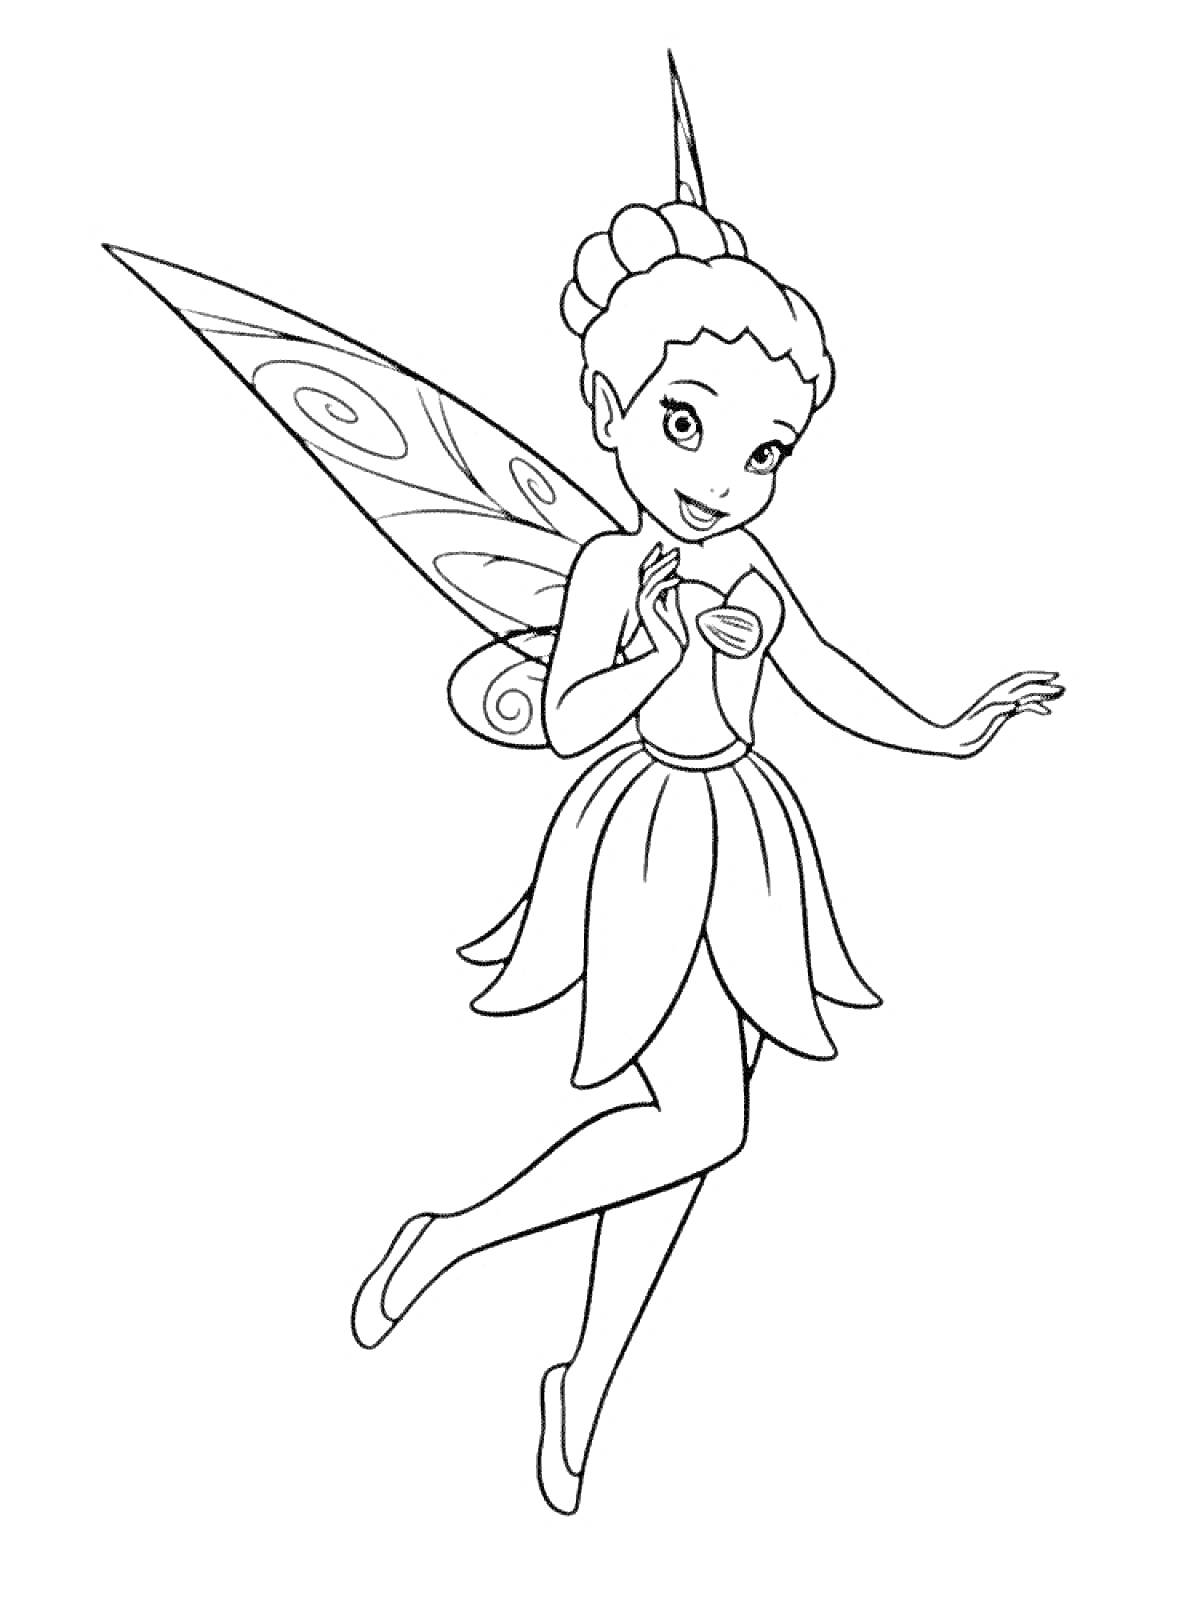 Раскраска Фея с собранными волосами и узорчатыми крыльями, в платье с лепестками, поднимающая руку